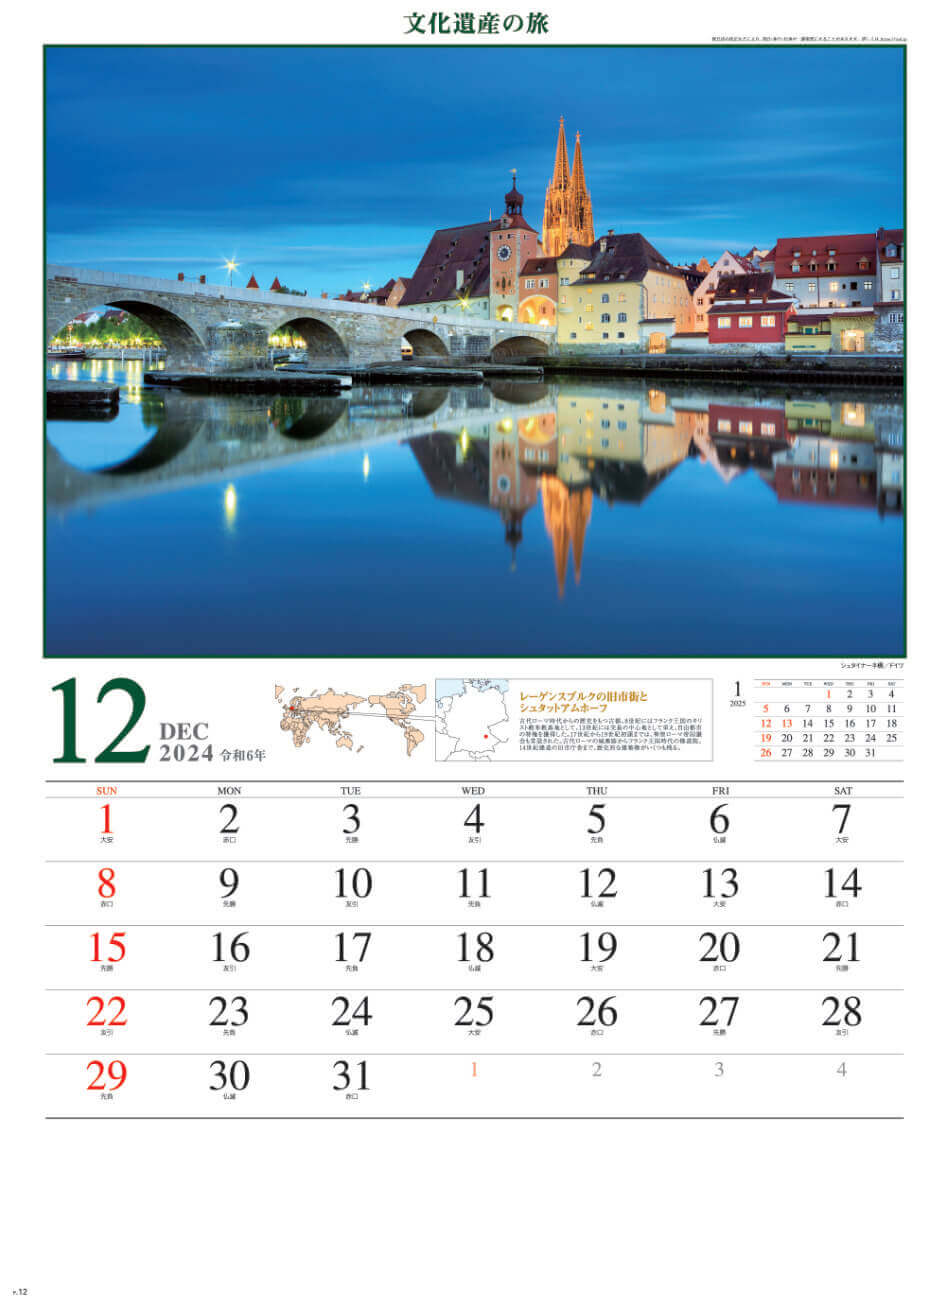 シュタイナーネ橋(ドイツ) 文化遺産の旅(ユネスコ世界遺産) 2024年カレンダーの画像